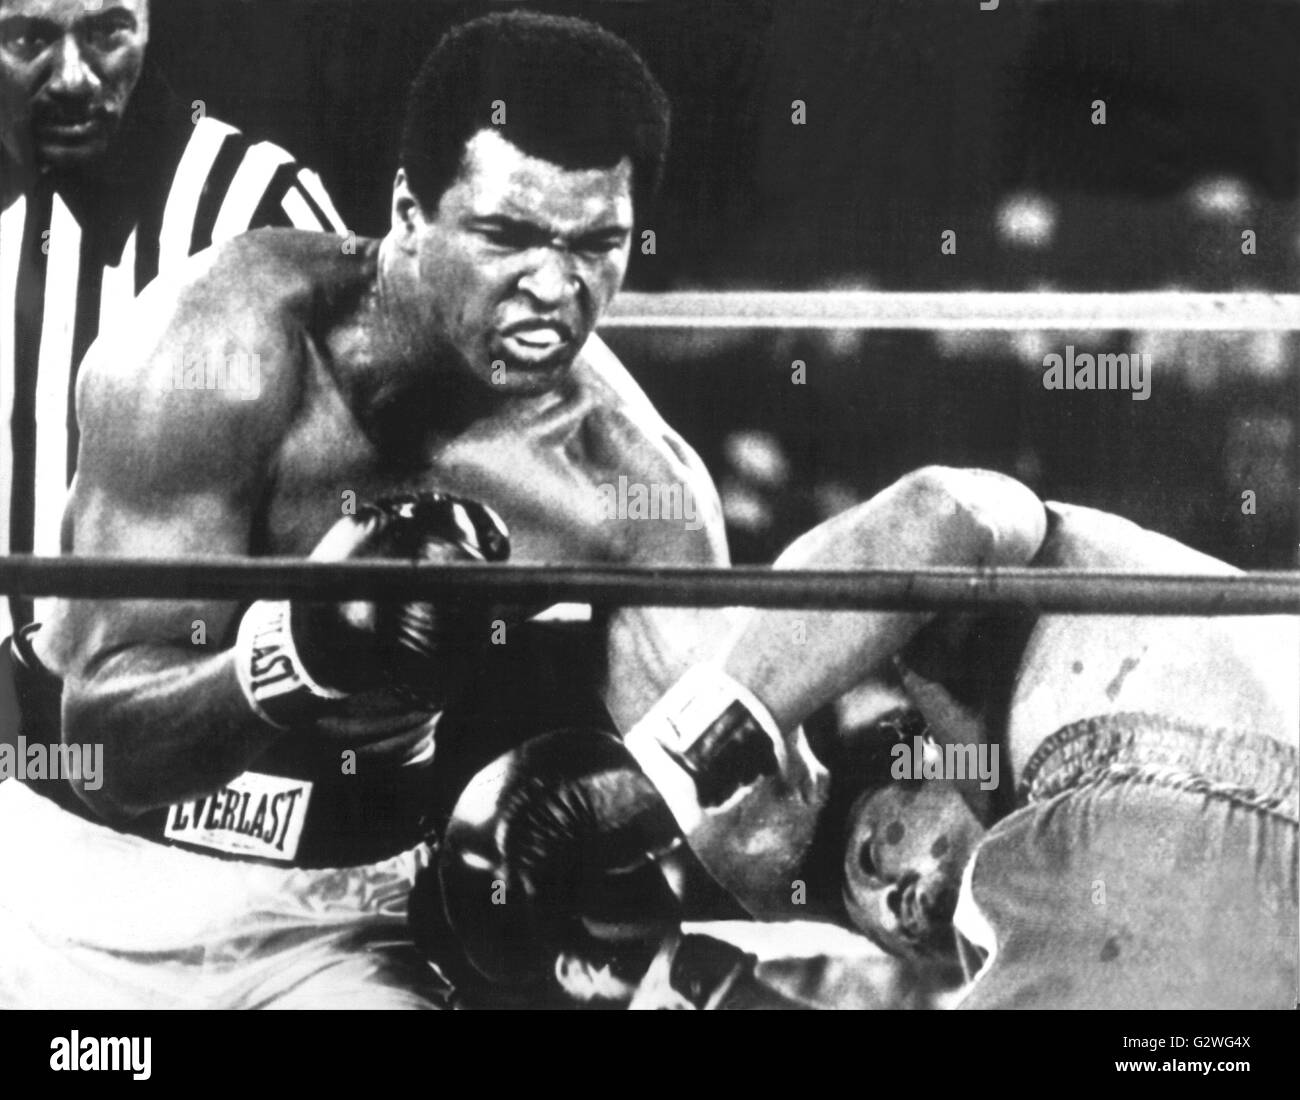 FILE - un file immagine datata 30 ottobre 1974 ci mostra boxer Muhammad Ali (L) bonifica pesante il suo titolo di campione del mondo battendo il suo avversario George Foreman a Kinshasa, Zaire. Nato Cassio argilla, boxe leggenda Muhammad Ali, soprannominato 'il più grande, ' morì il 03 giugno 2016 a Phoenix, Arizona, Stati Uniti d'America, all'età di 74, una famiglia portavoce ha detto. Foto: dpa Foto Stock